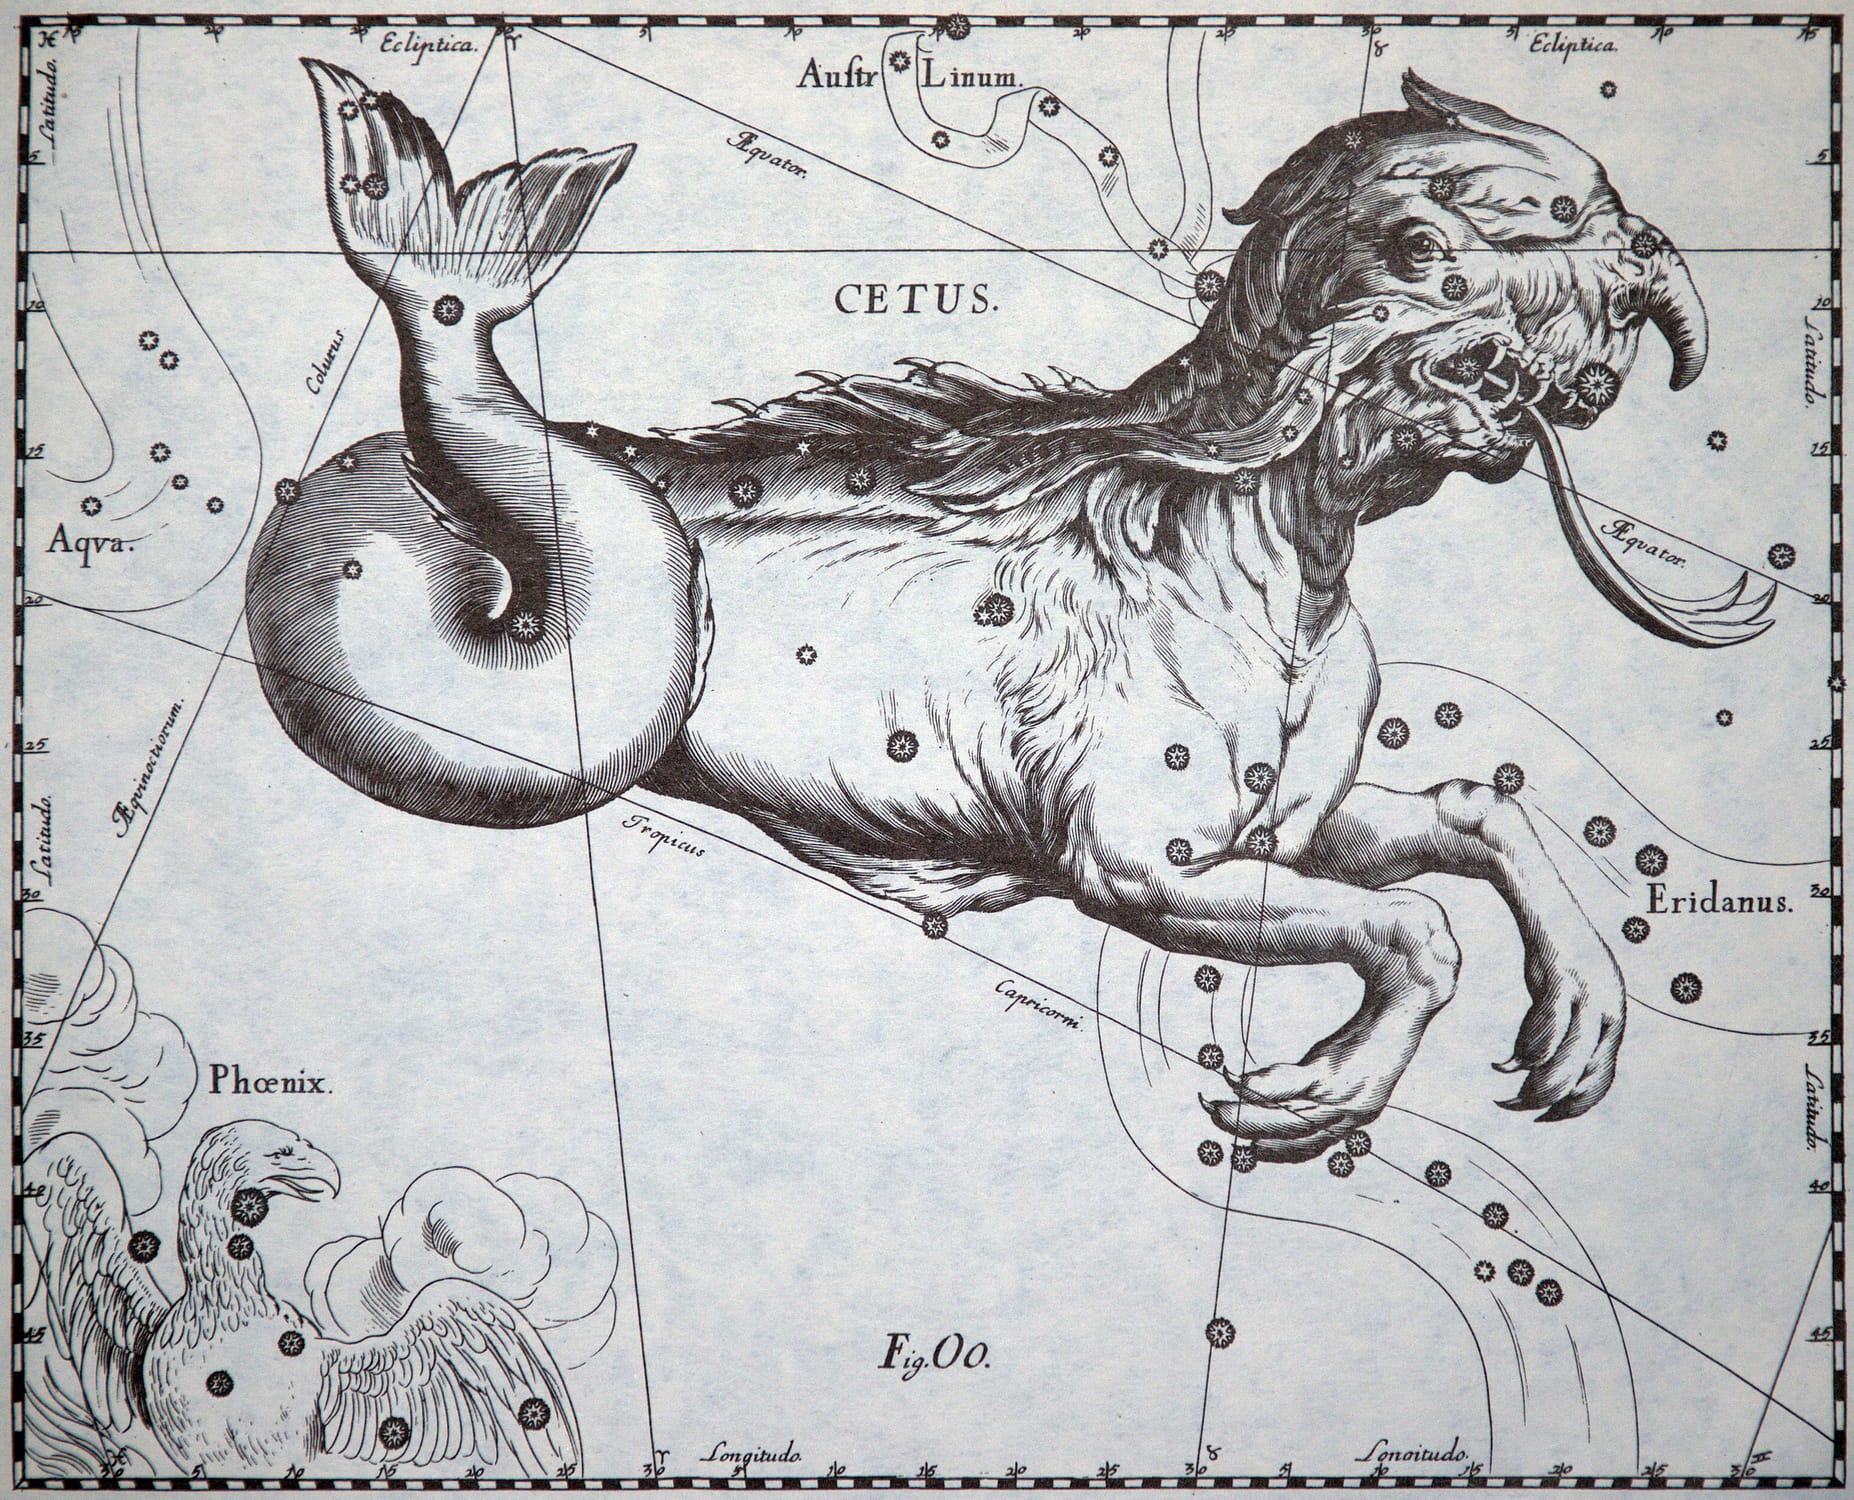 In dem Sternbild Walfisch wurde seit der Antike eine Meeresungeheuer gesehen, das in Sternatlanten als Mischung verschiedener Fabelwesen dargestellt wurde - hier mit Drachenkopf, krallenbewehrten Vorderpfoten und einem schlagkräftigen Fischschwanz.